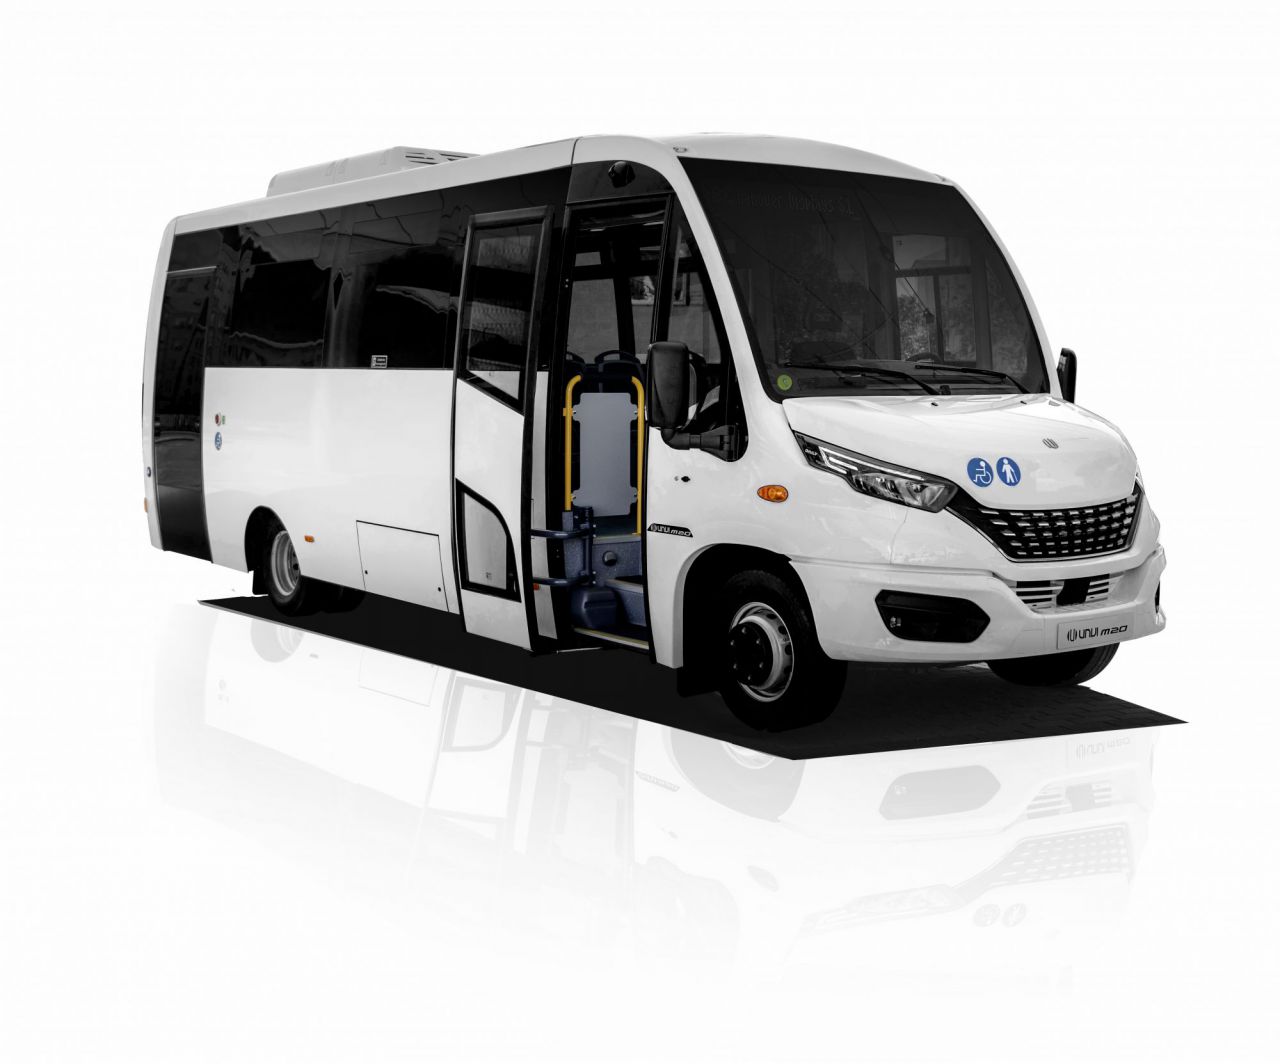 Tipo: Minibús urbano
Longitud: 8,2 metros
Altura: 3,1 metros
Chasis: Iveco 70C.
Capacidad: hasta 24 sentados +1 PMR ó 2 transportines+C.
Versiones: Diésel y GNC. Clase I y Clase II.